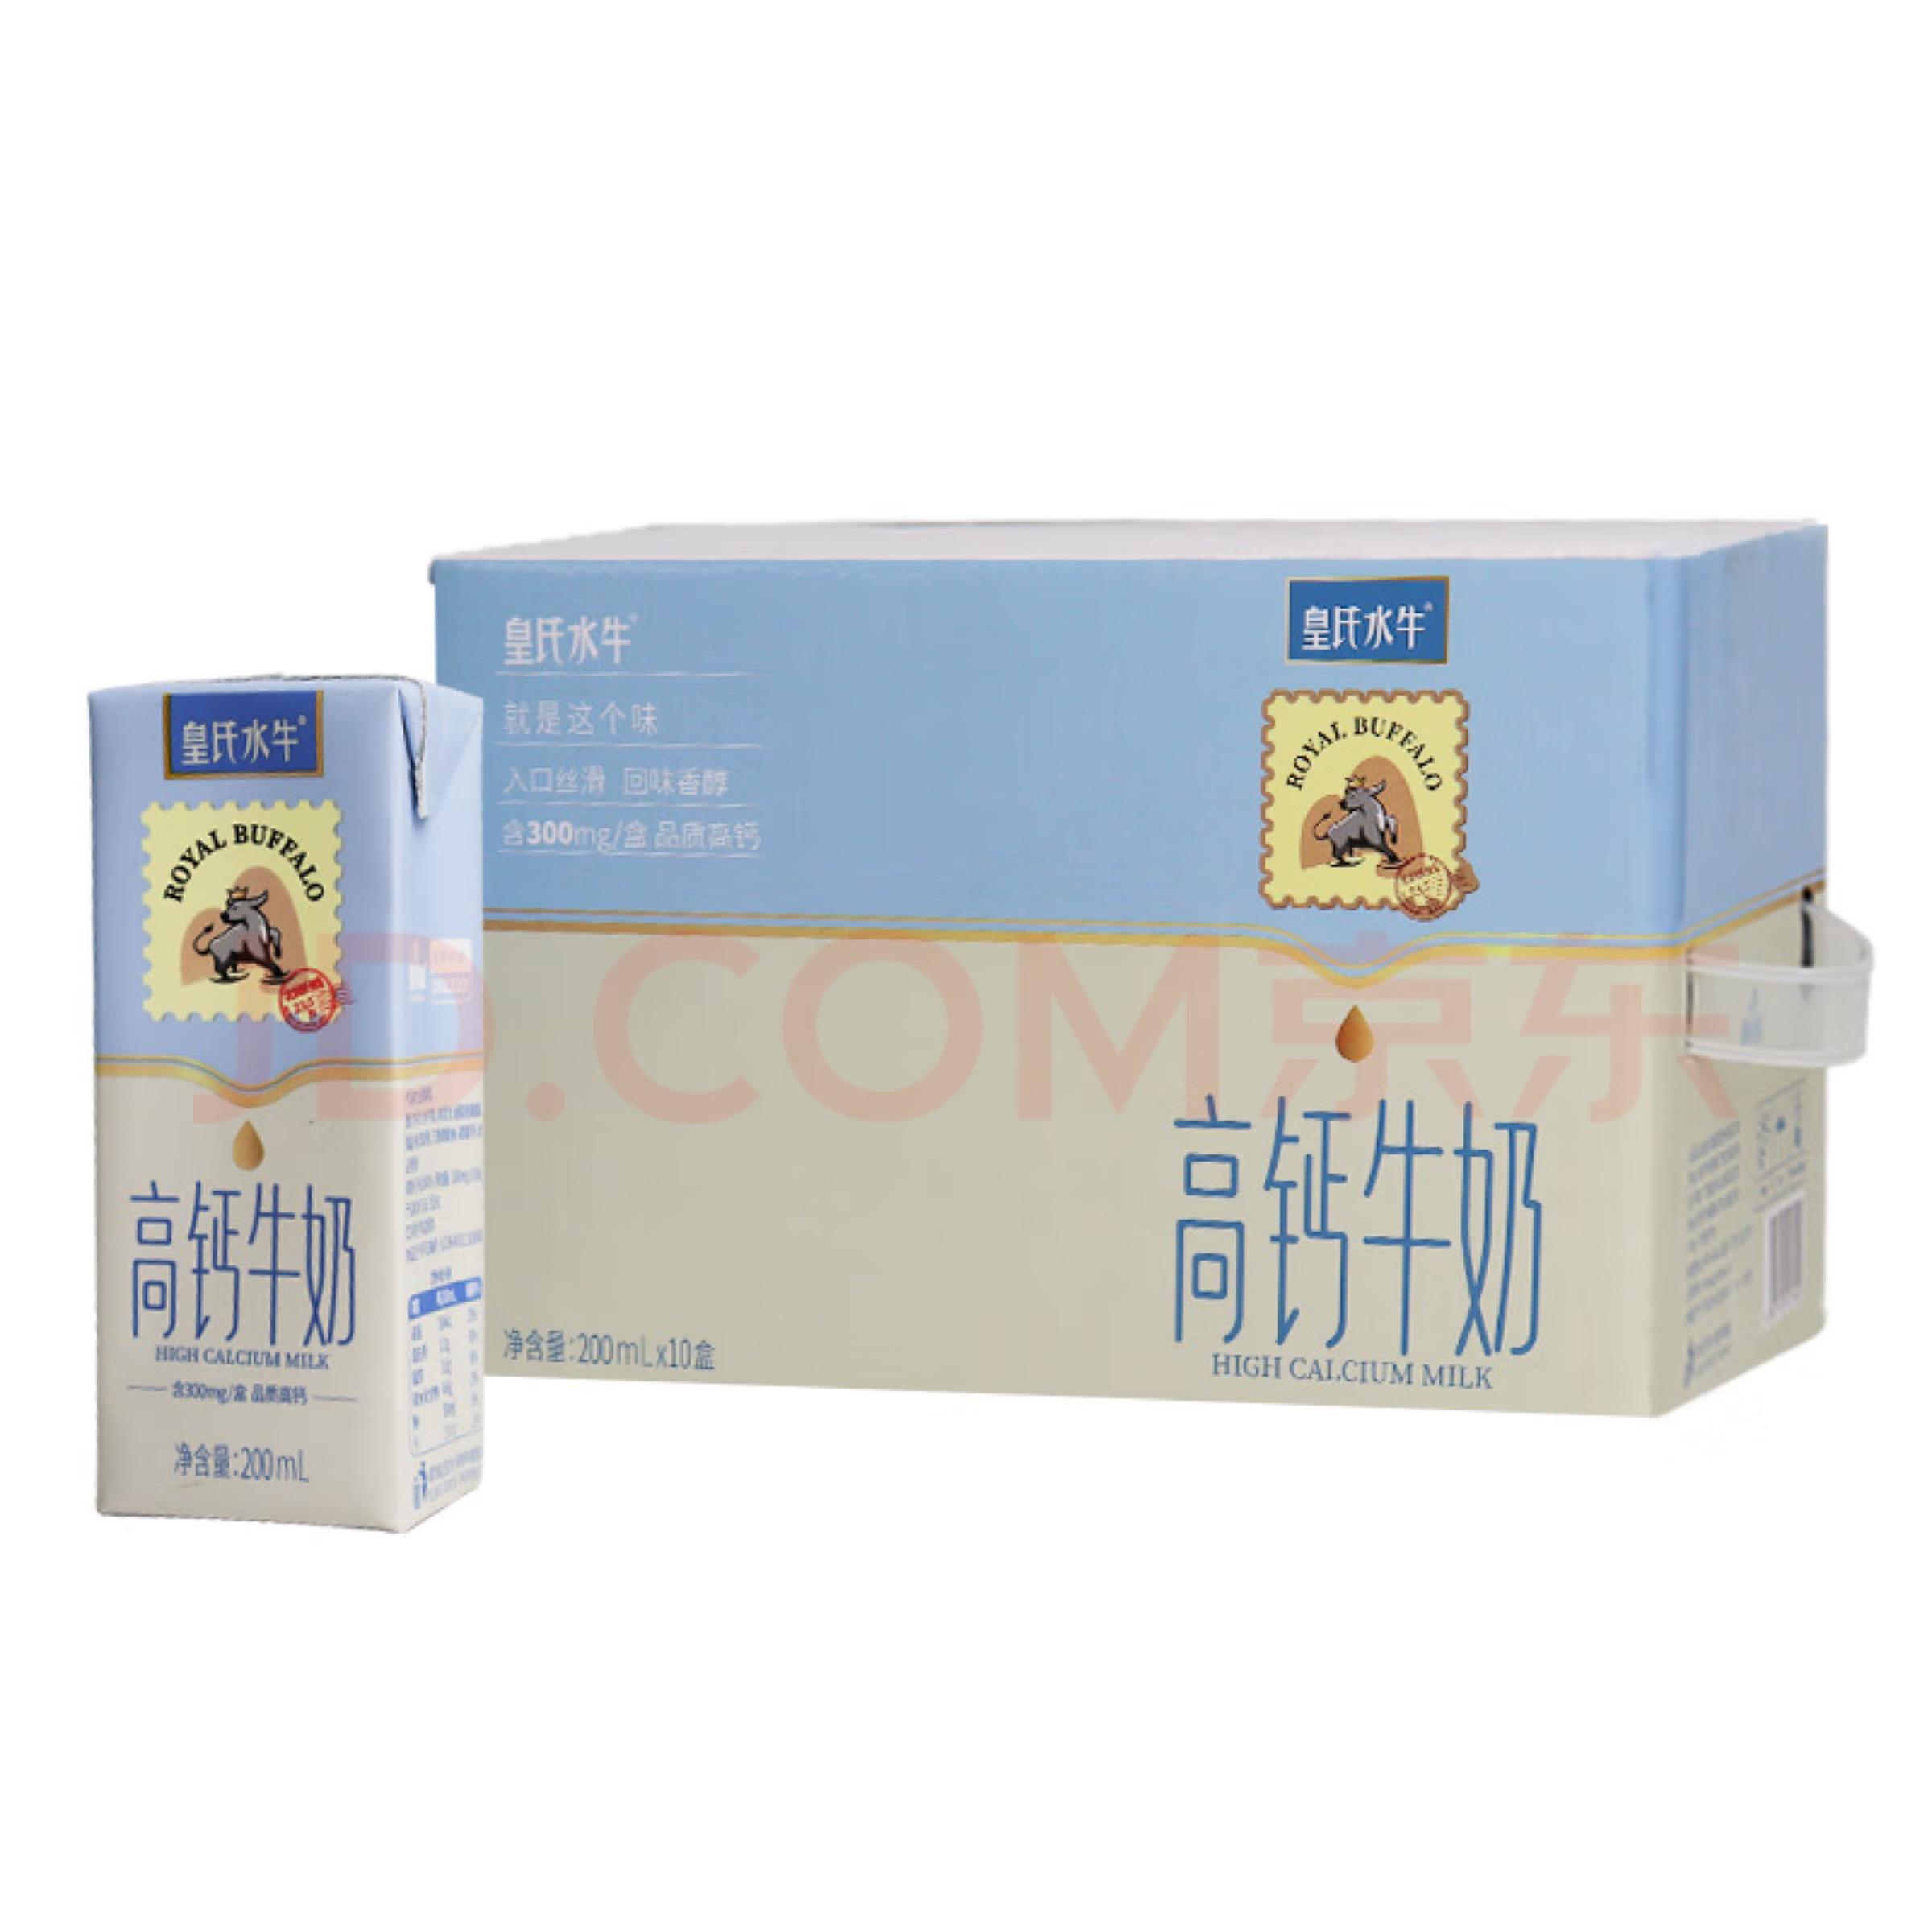 概率券：皇氏乳业水牛高钙牛奶200ml*10盒 54.88（2件合每件27.44元）